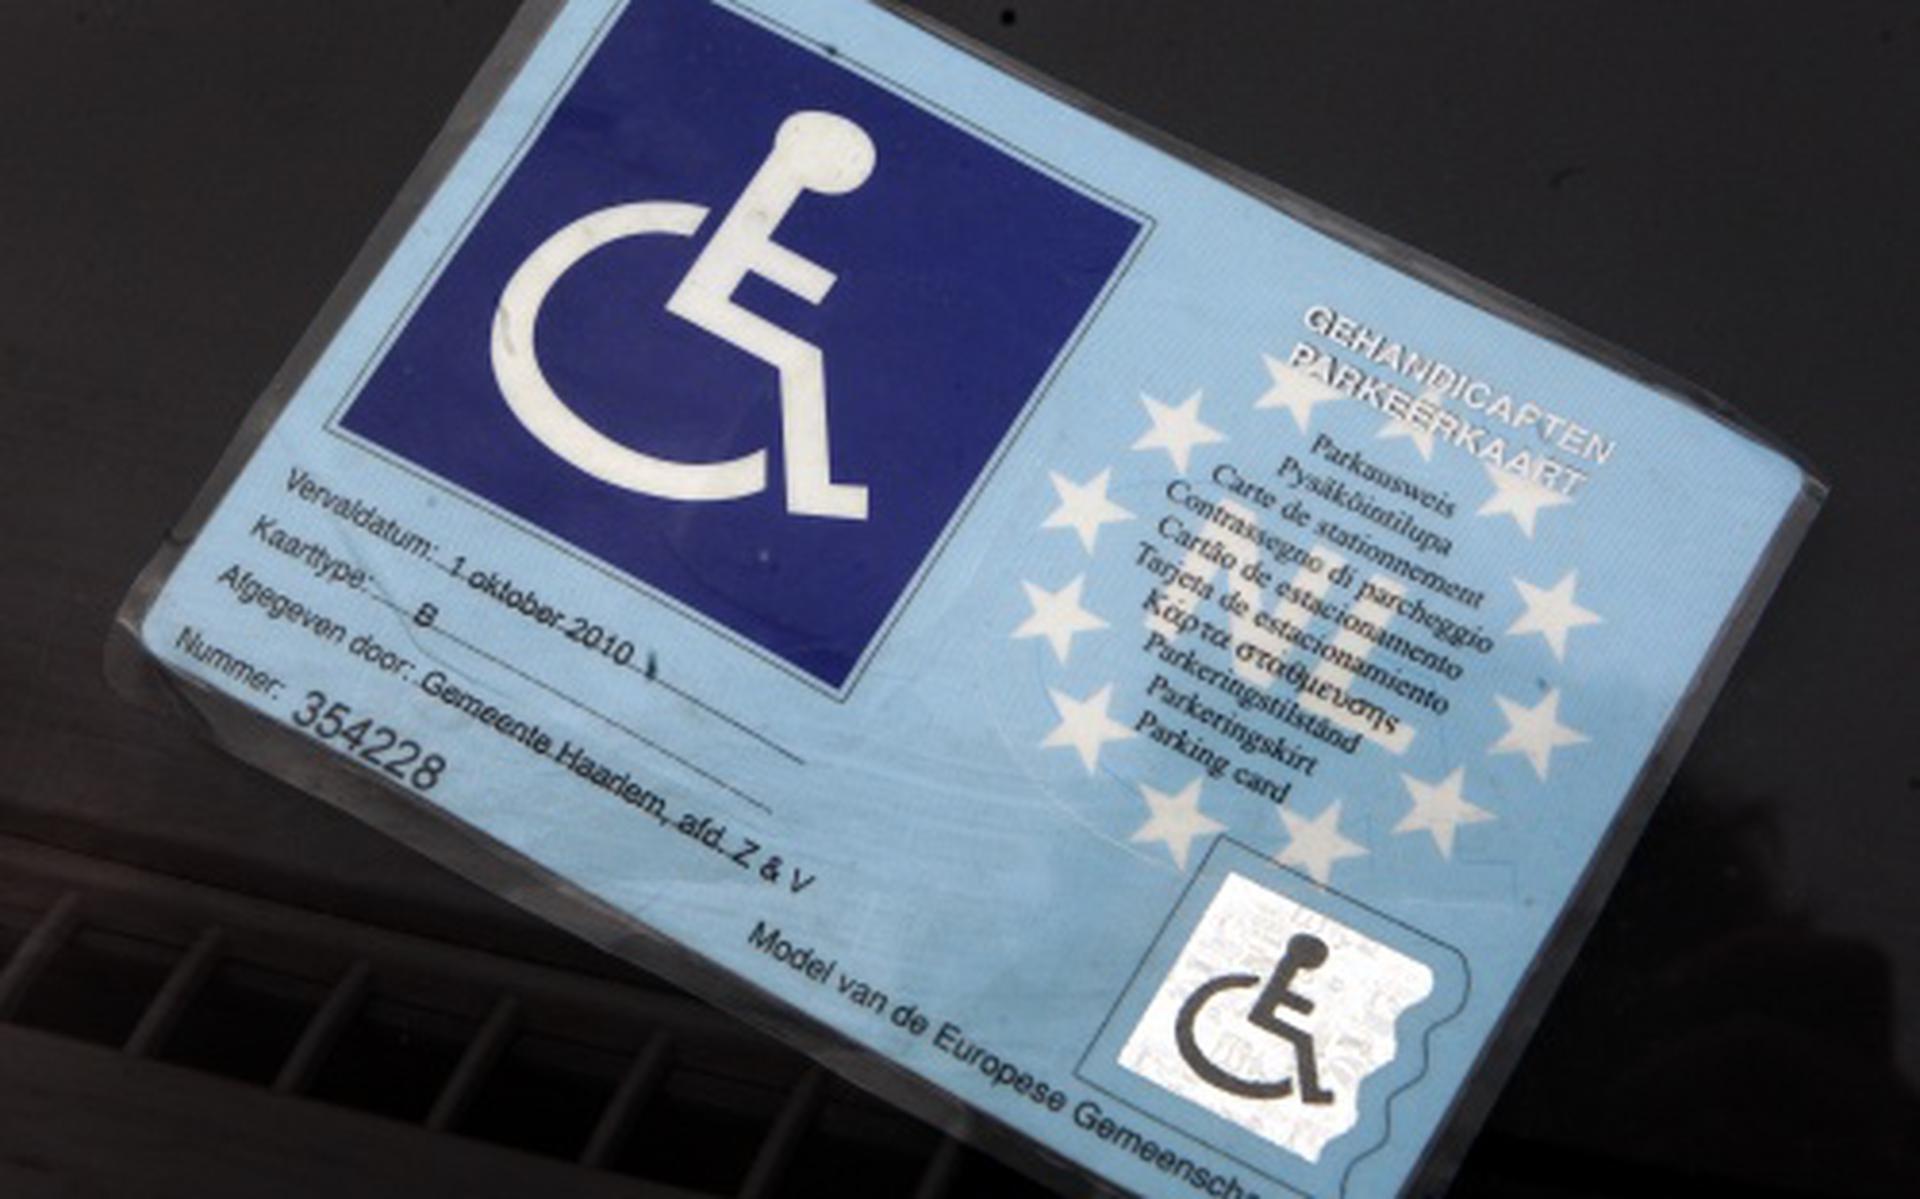 Een gehandicaptenparkeerkaart.